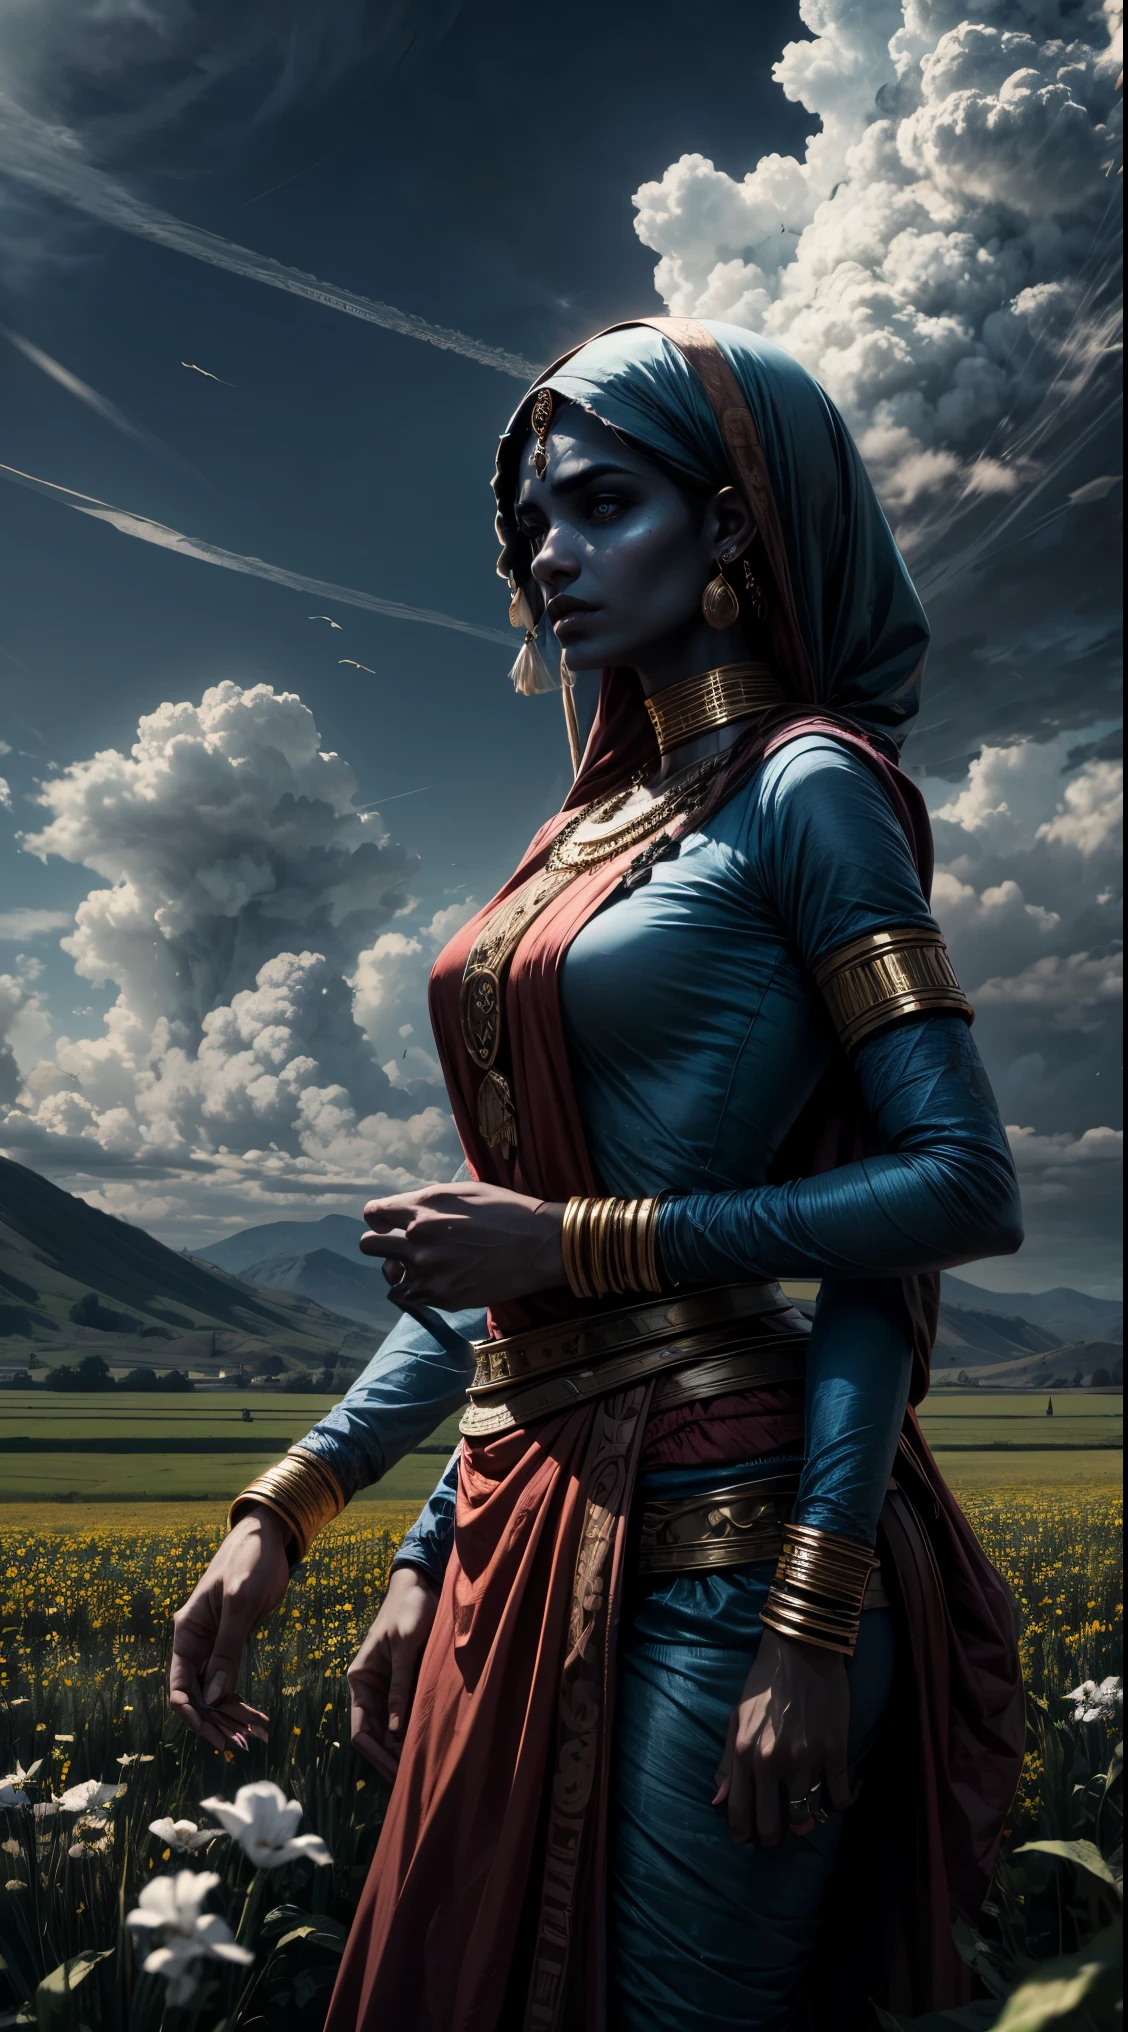 阿拉伯女人, 藍色皮膚, 她有四隻手臂, 印度女人, 戰鬥盜賊衣服, 場地, 雲 